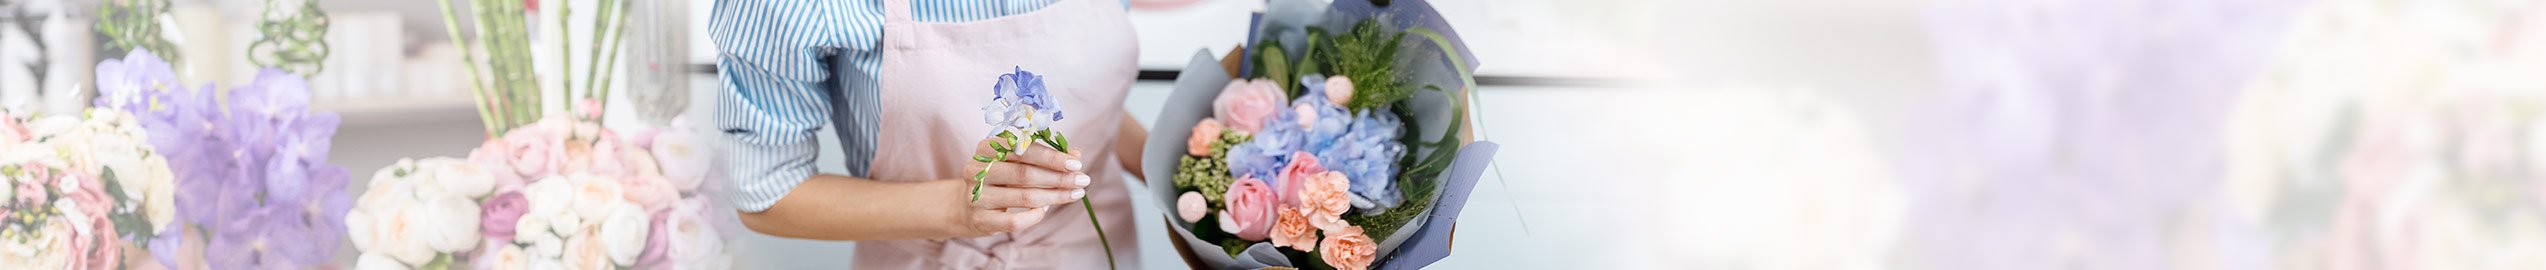 קופסאות פרחים